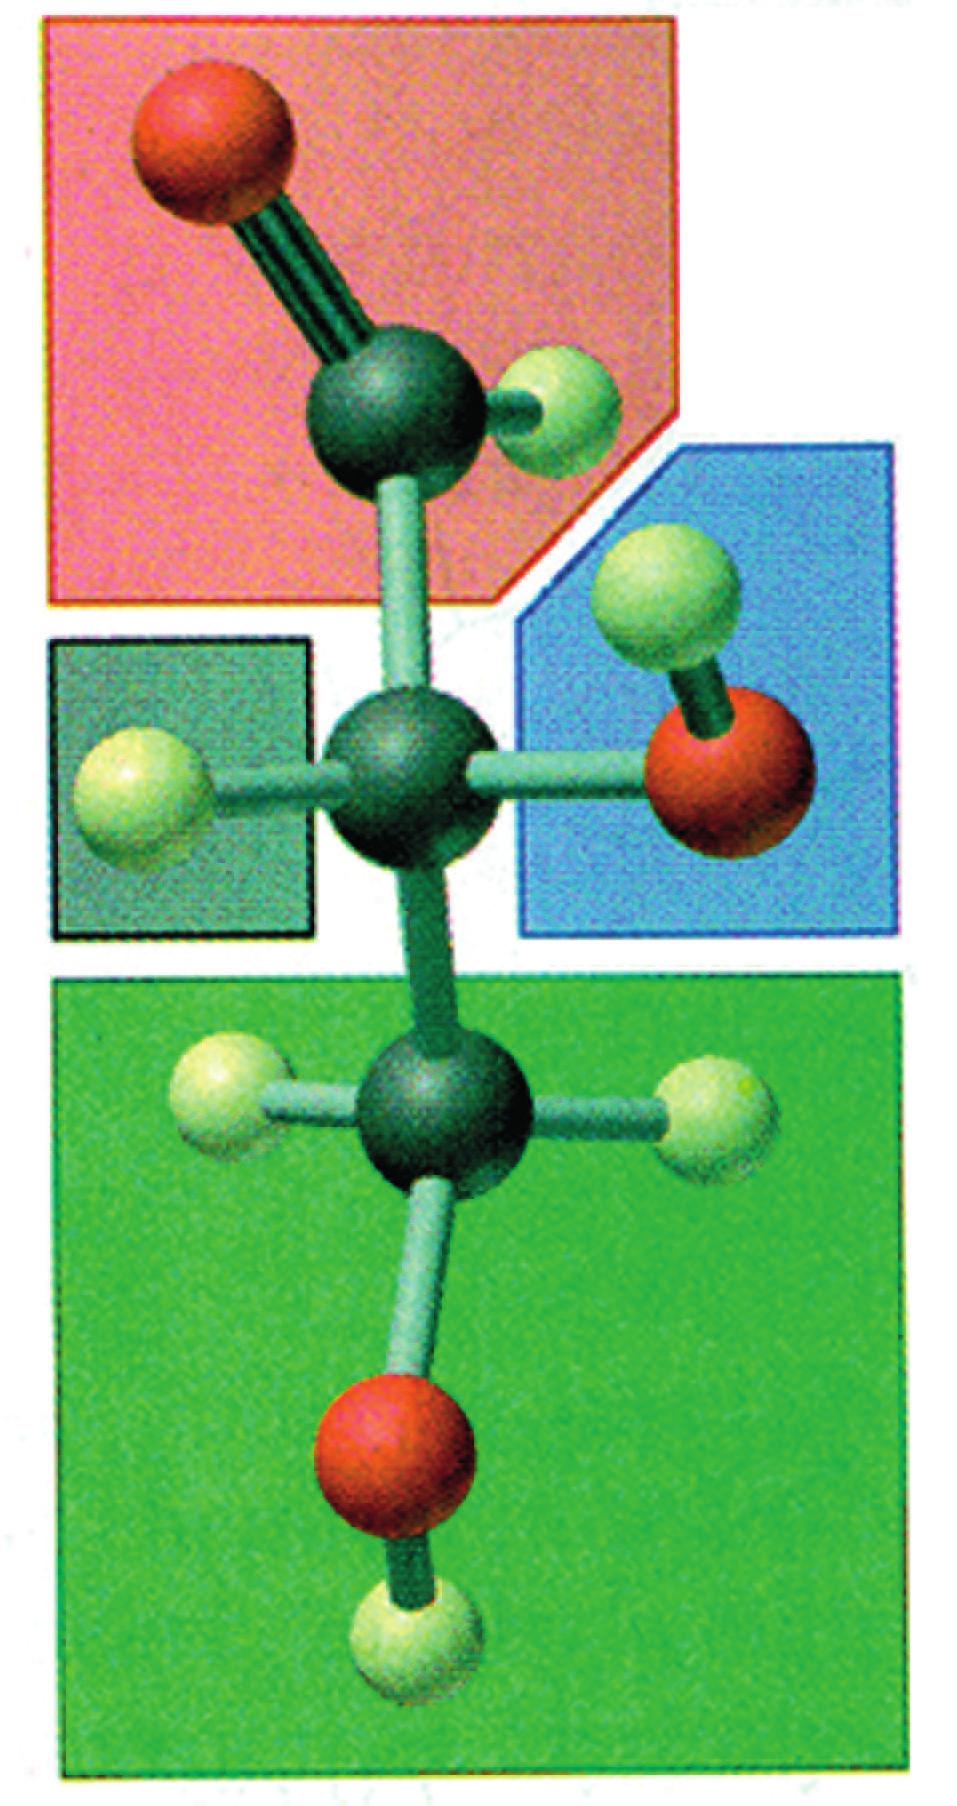 O H C H C OH CH 2 OH Ομάδες συνδεδεμένες με άτομα C 2 1. CHO 2. H 3. OH 4. CH 2 OH D - γλυκεριναλδεΰδη ΣXHMA 5.2 Μοριακό μοντέλο της απλούστερης αλδοτριόζης, που είναι η γλυκεριναλδεΰδη.